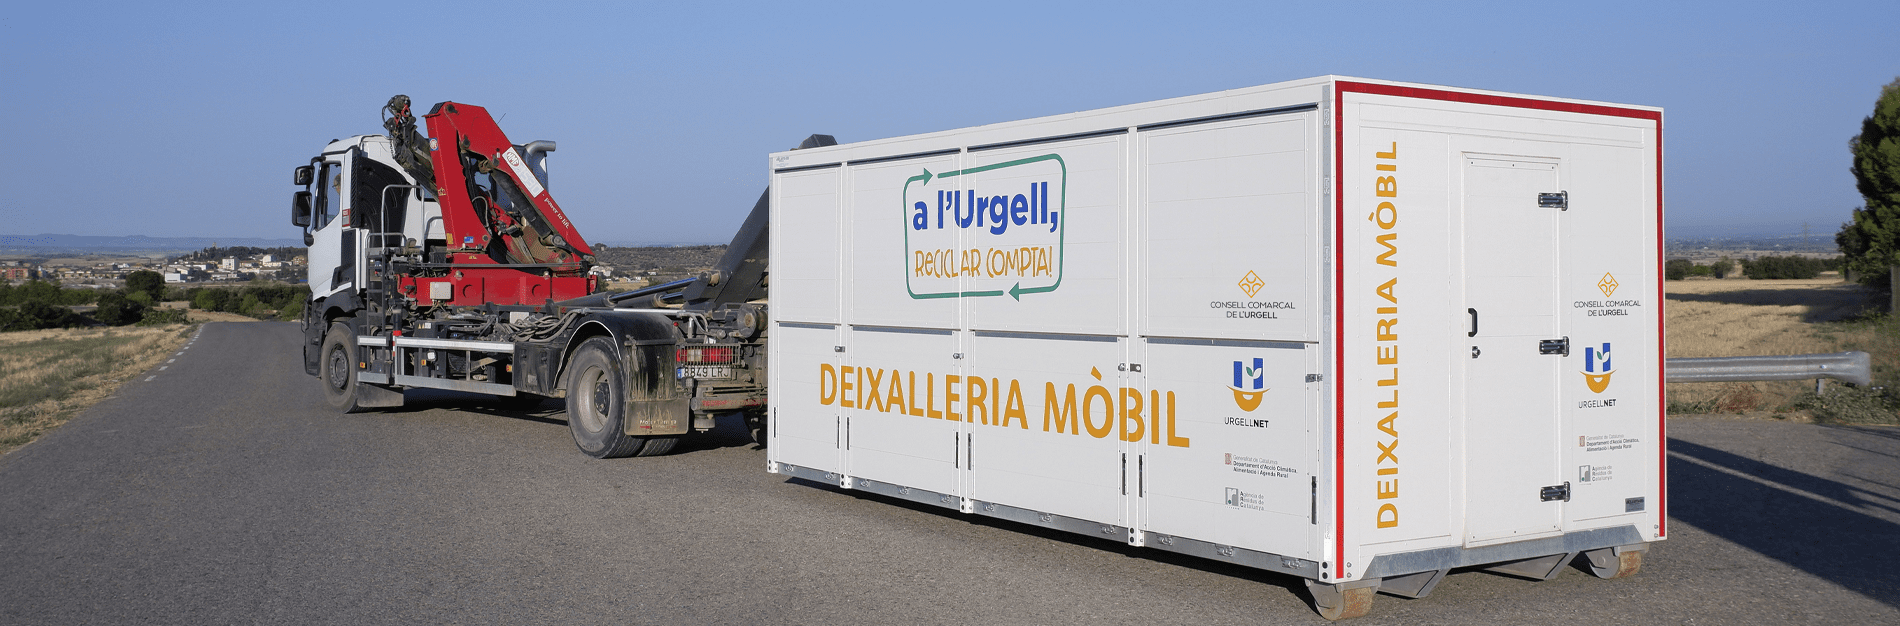 UrgellNet Deixalleria mòbil